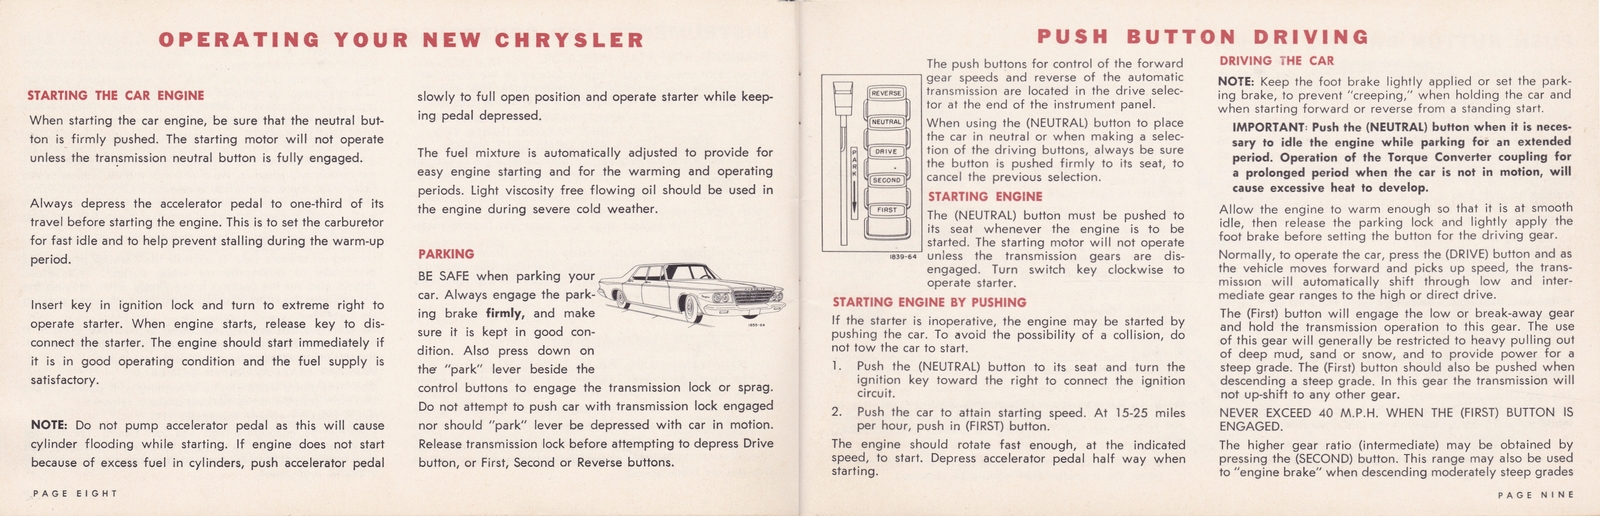 n_1964 Chrysler Owner's Manual (Cdn)-08-09.jpg